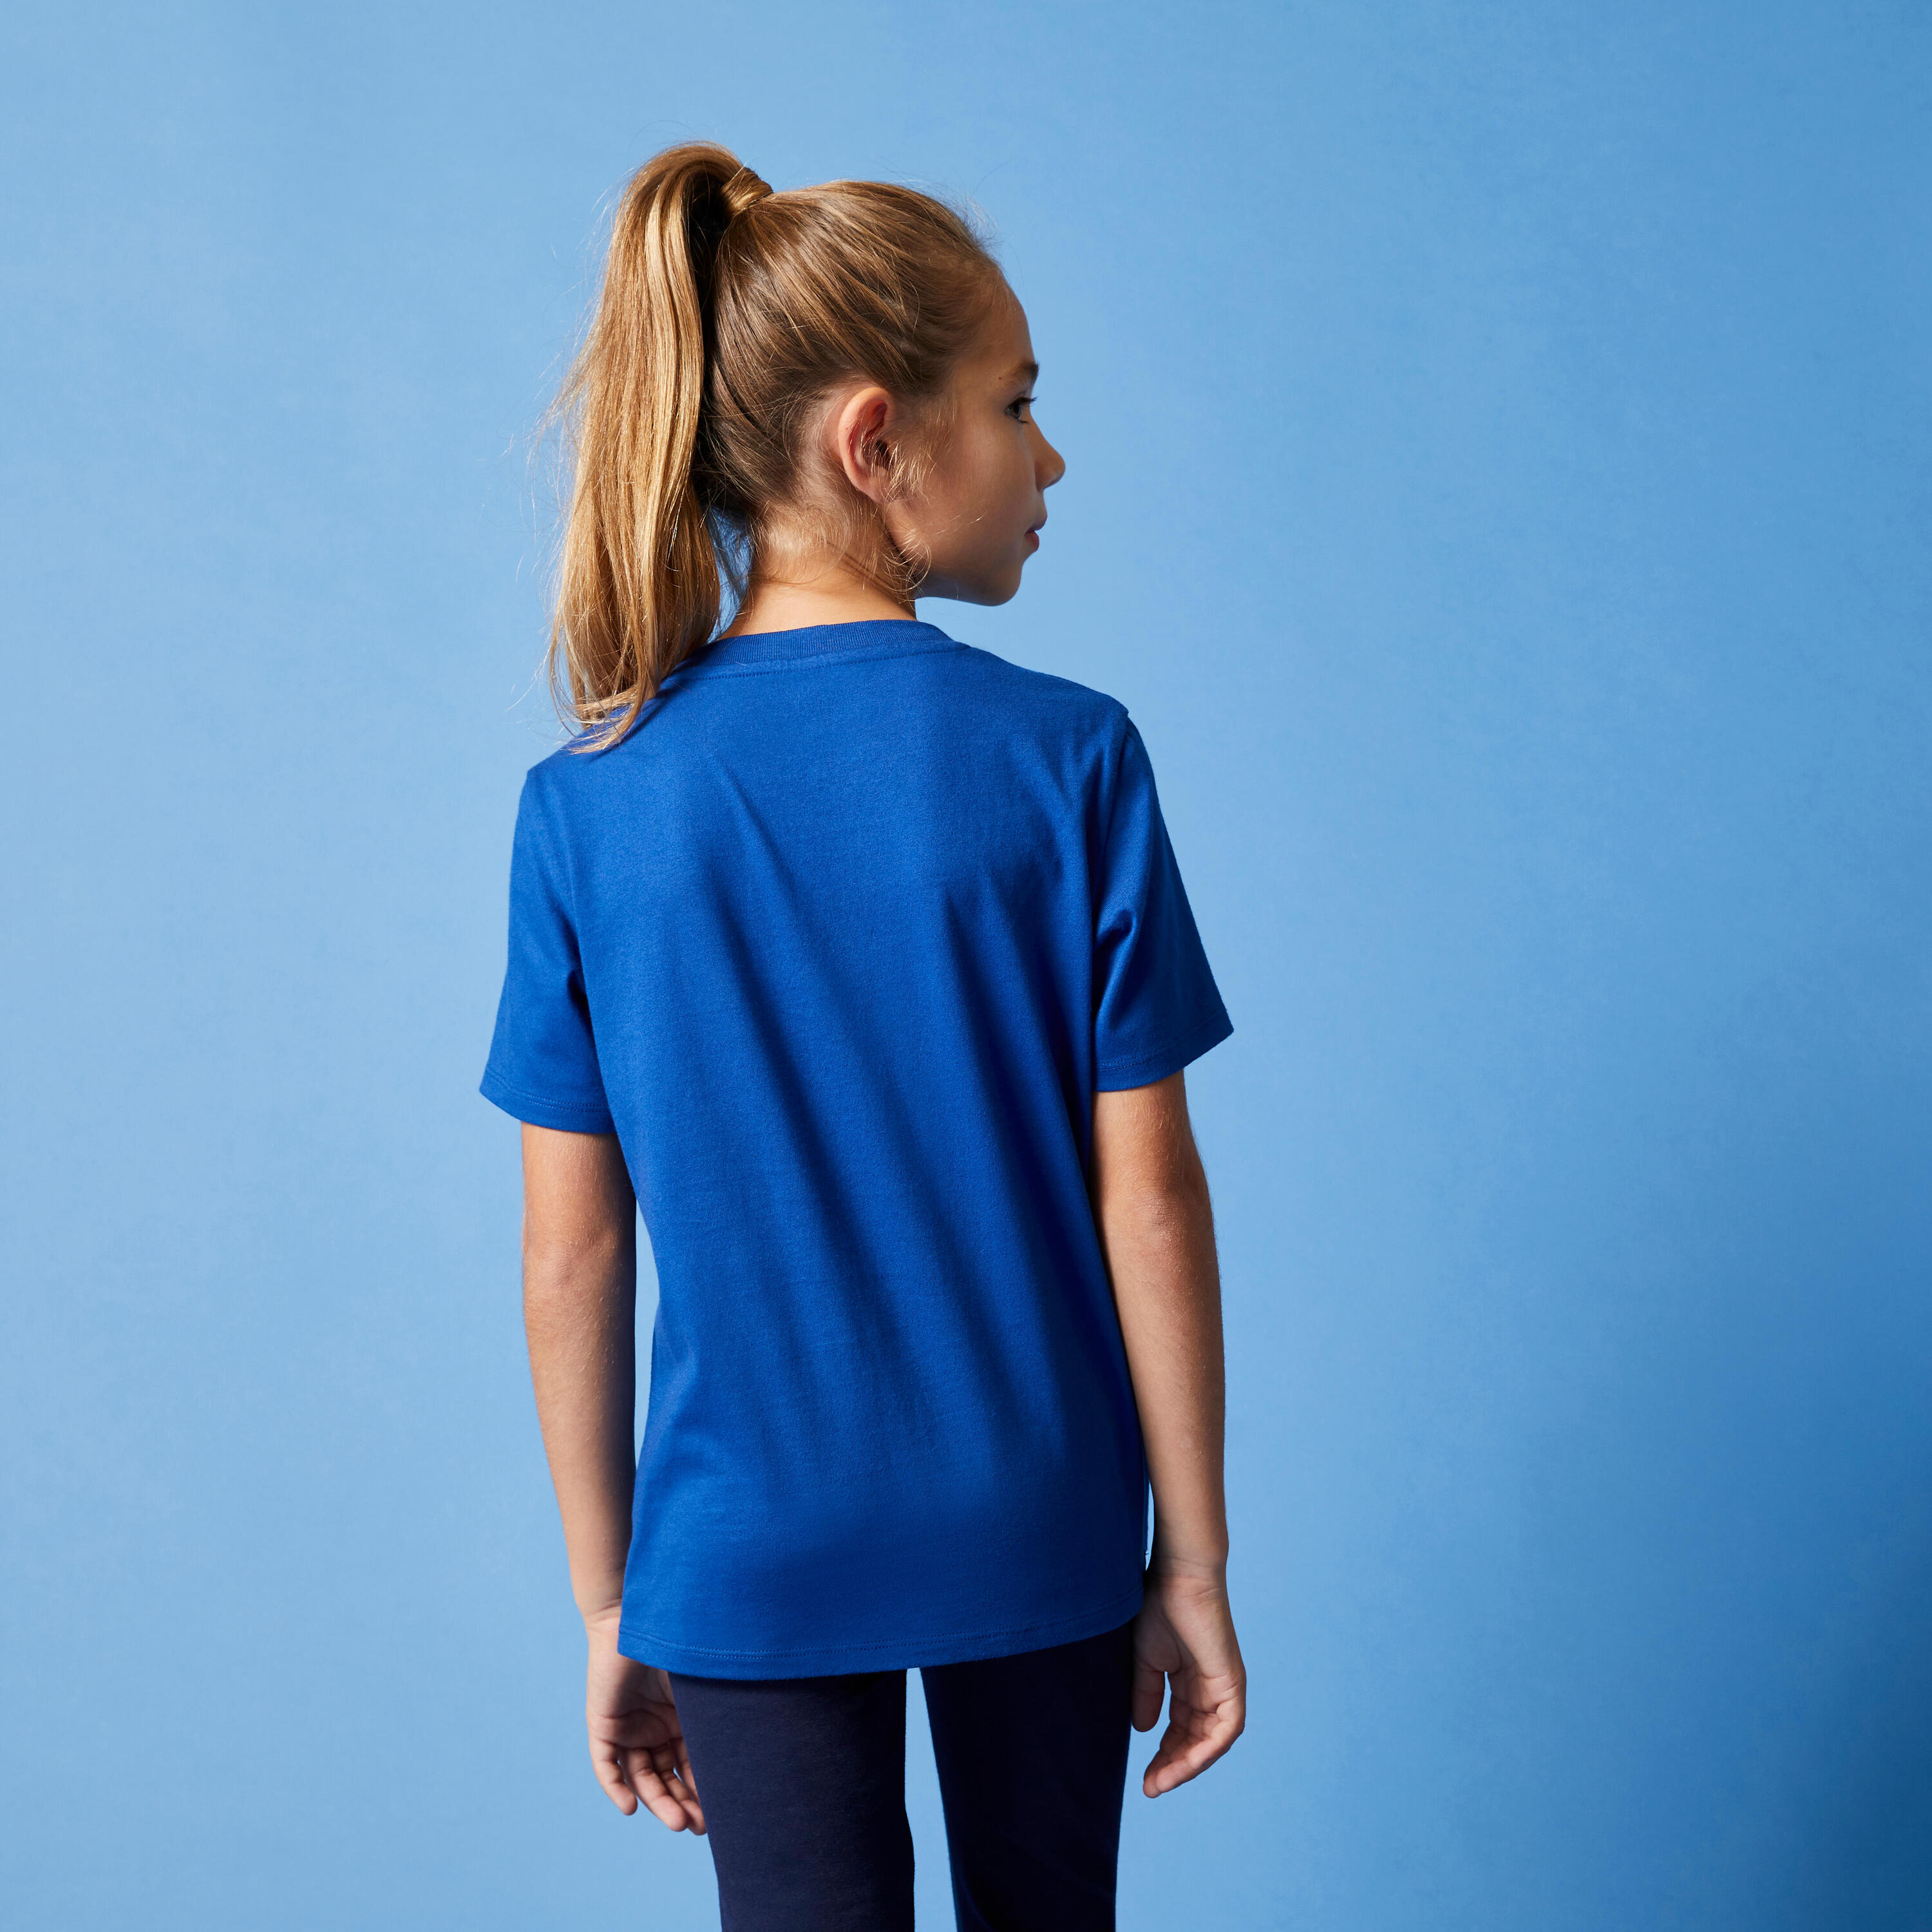 Kids' Unisex Cotton T-Shirt - Blue 4/7